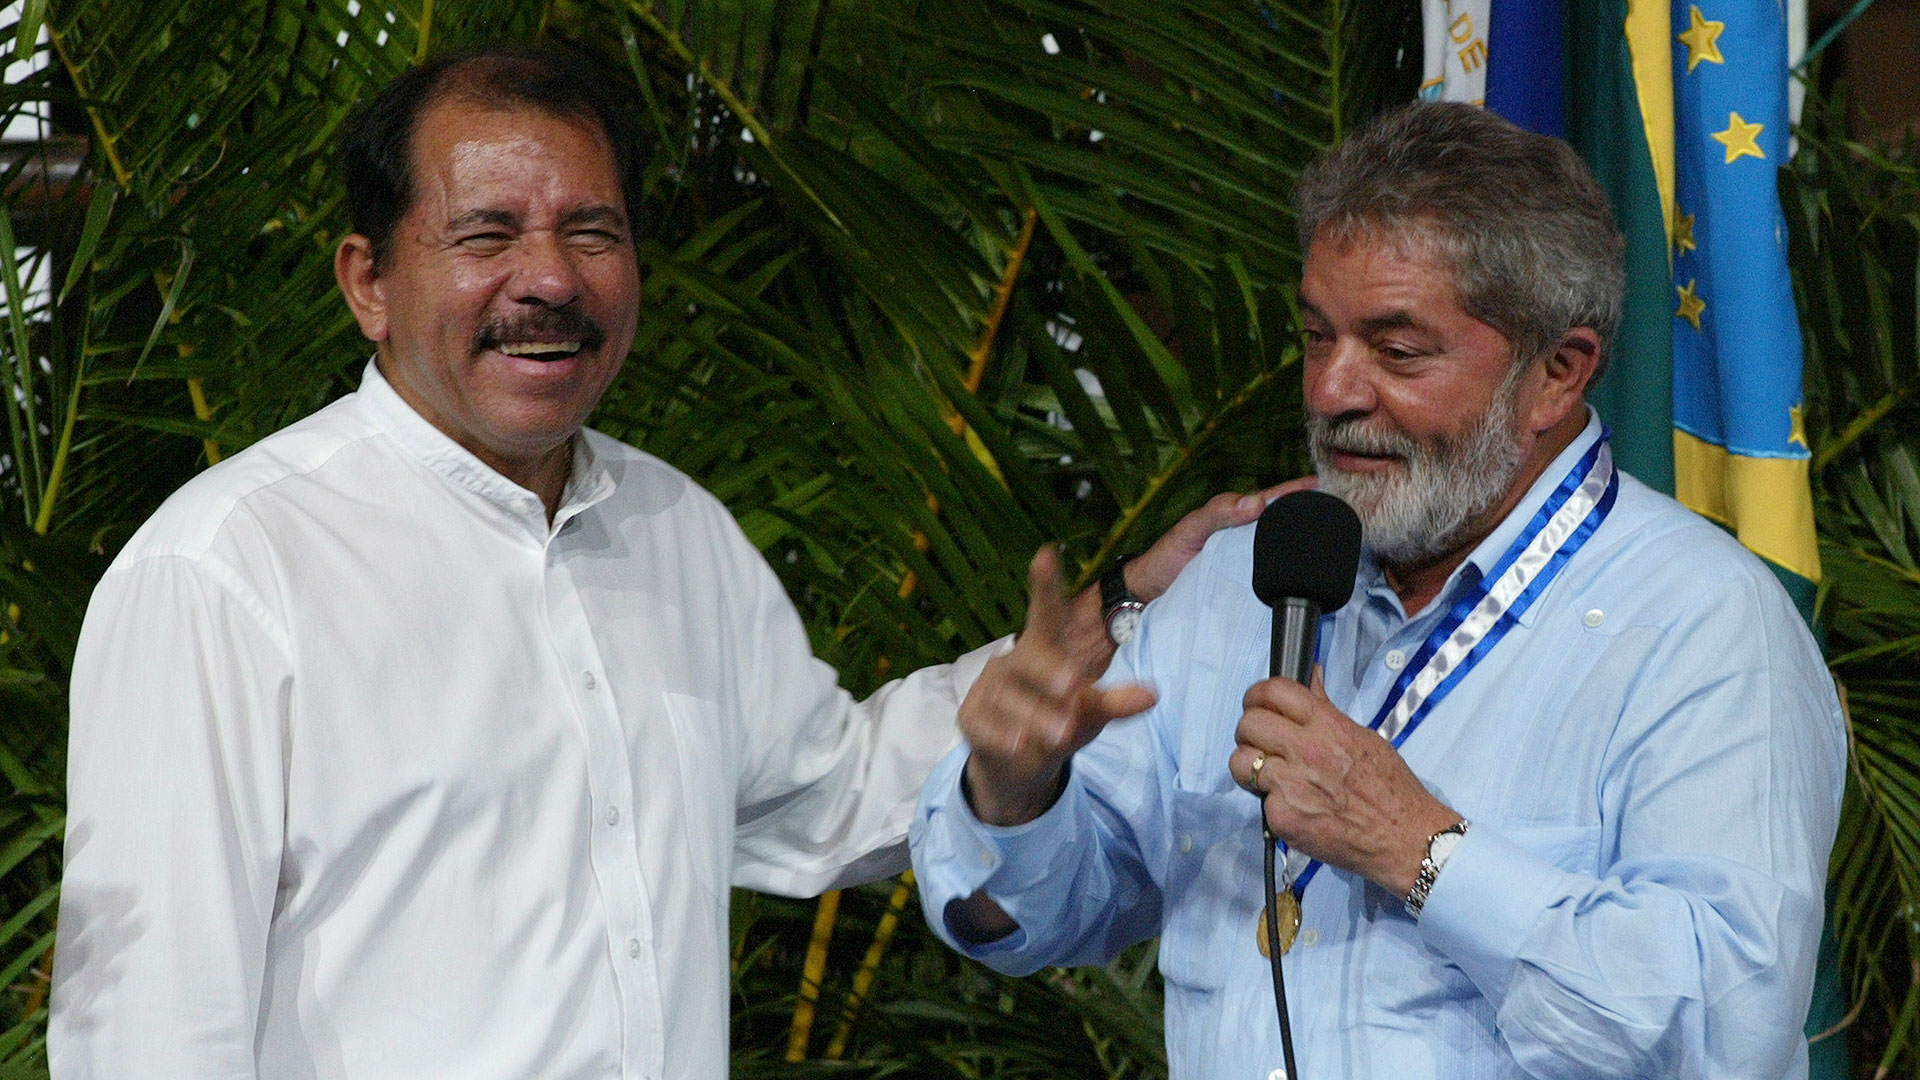 El dictador nicaraguense Daniel Ortega junto al presidente de Brasil, Lula Da Silva, durante la primera etapa en la que Lula presidió su país. (Reuters)